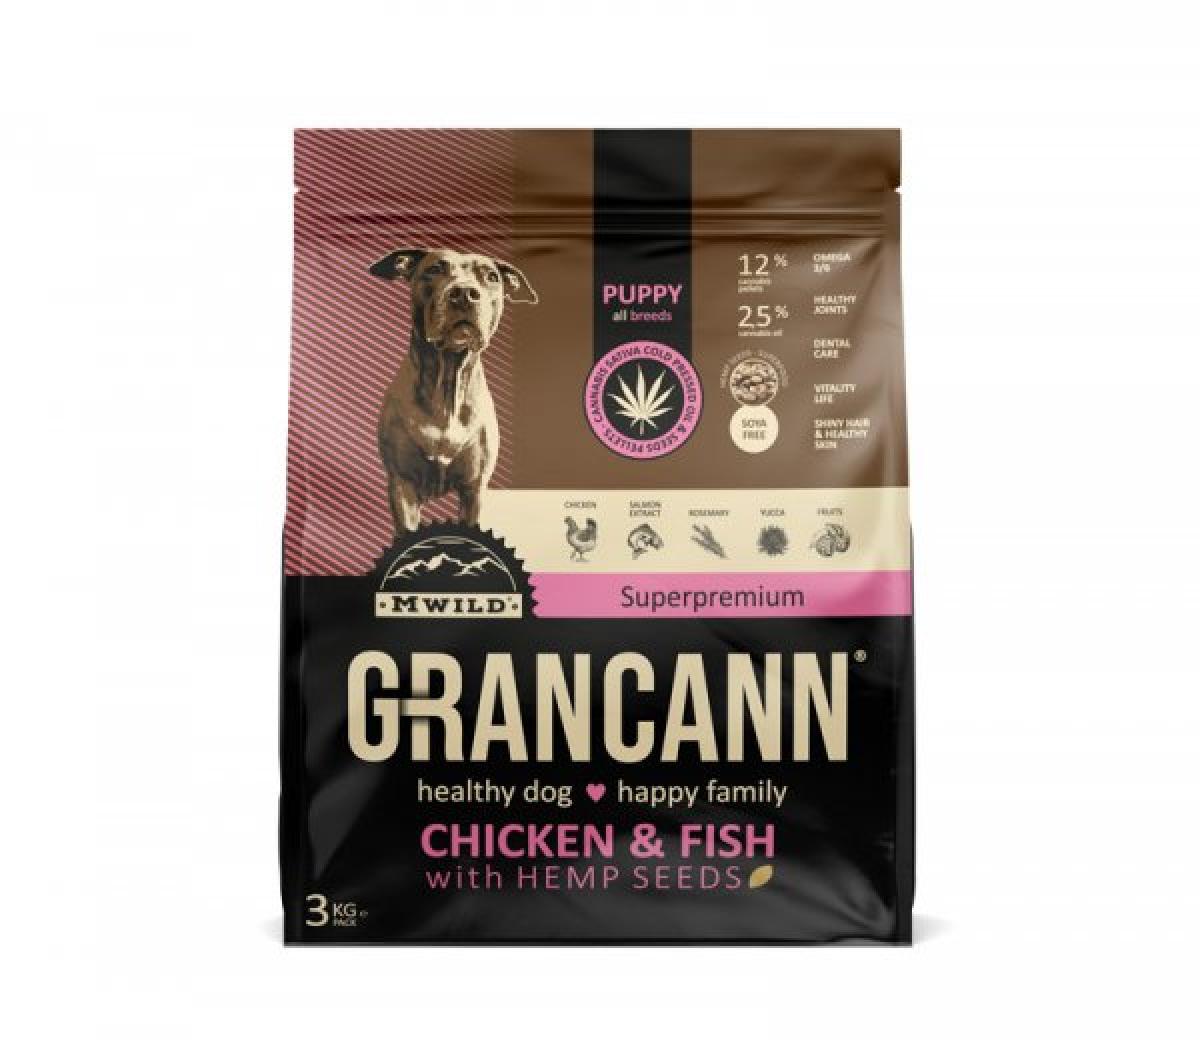 GRANCANN Puppy All Breeds Chicken+Fish 3kg